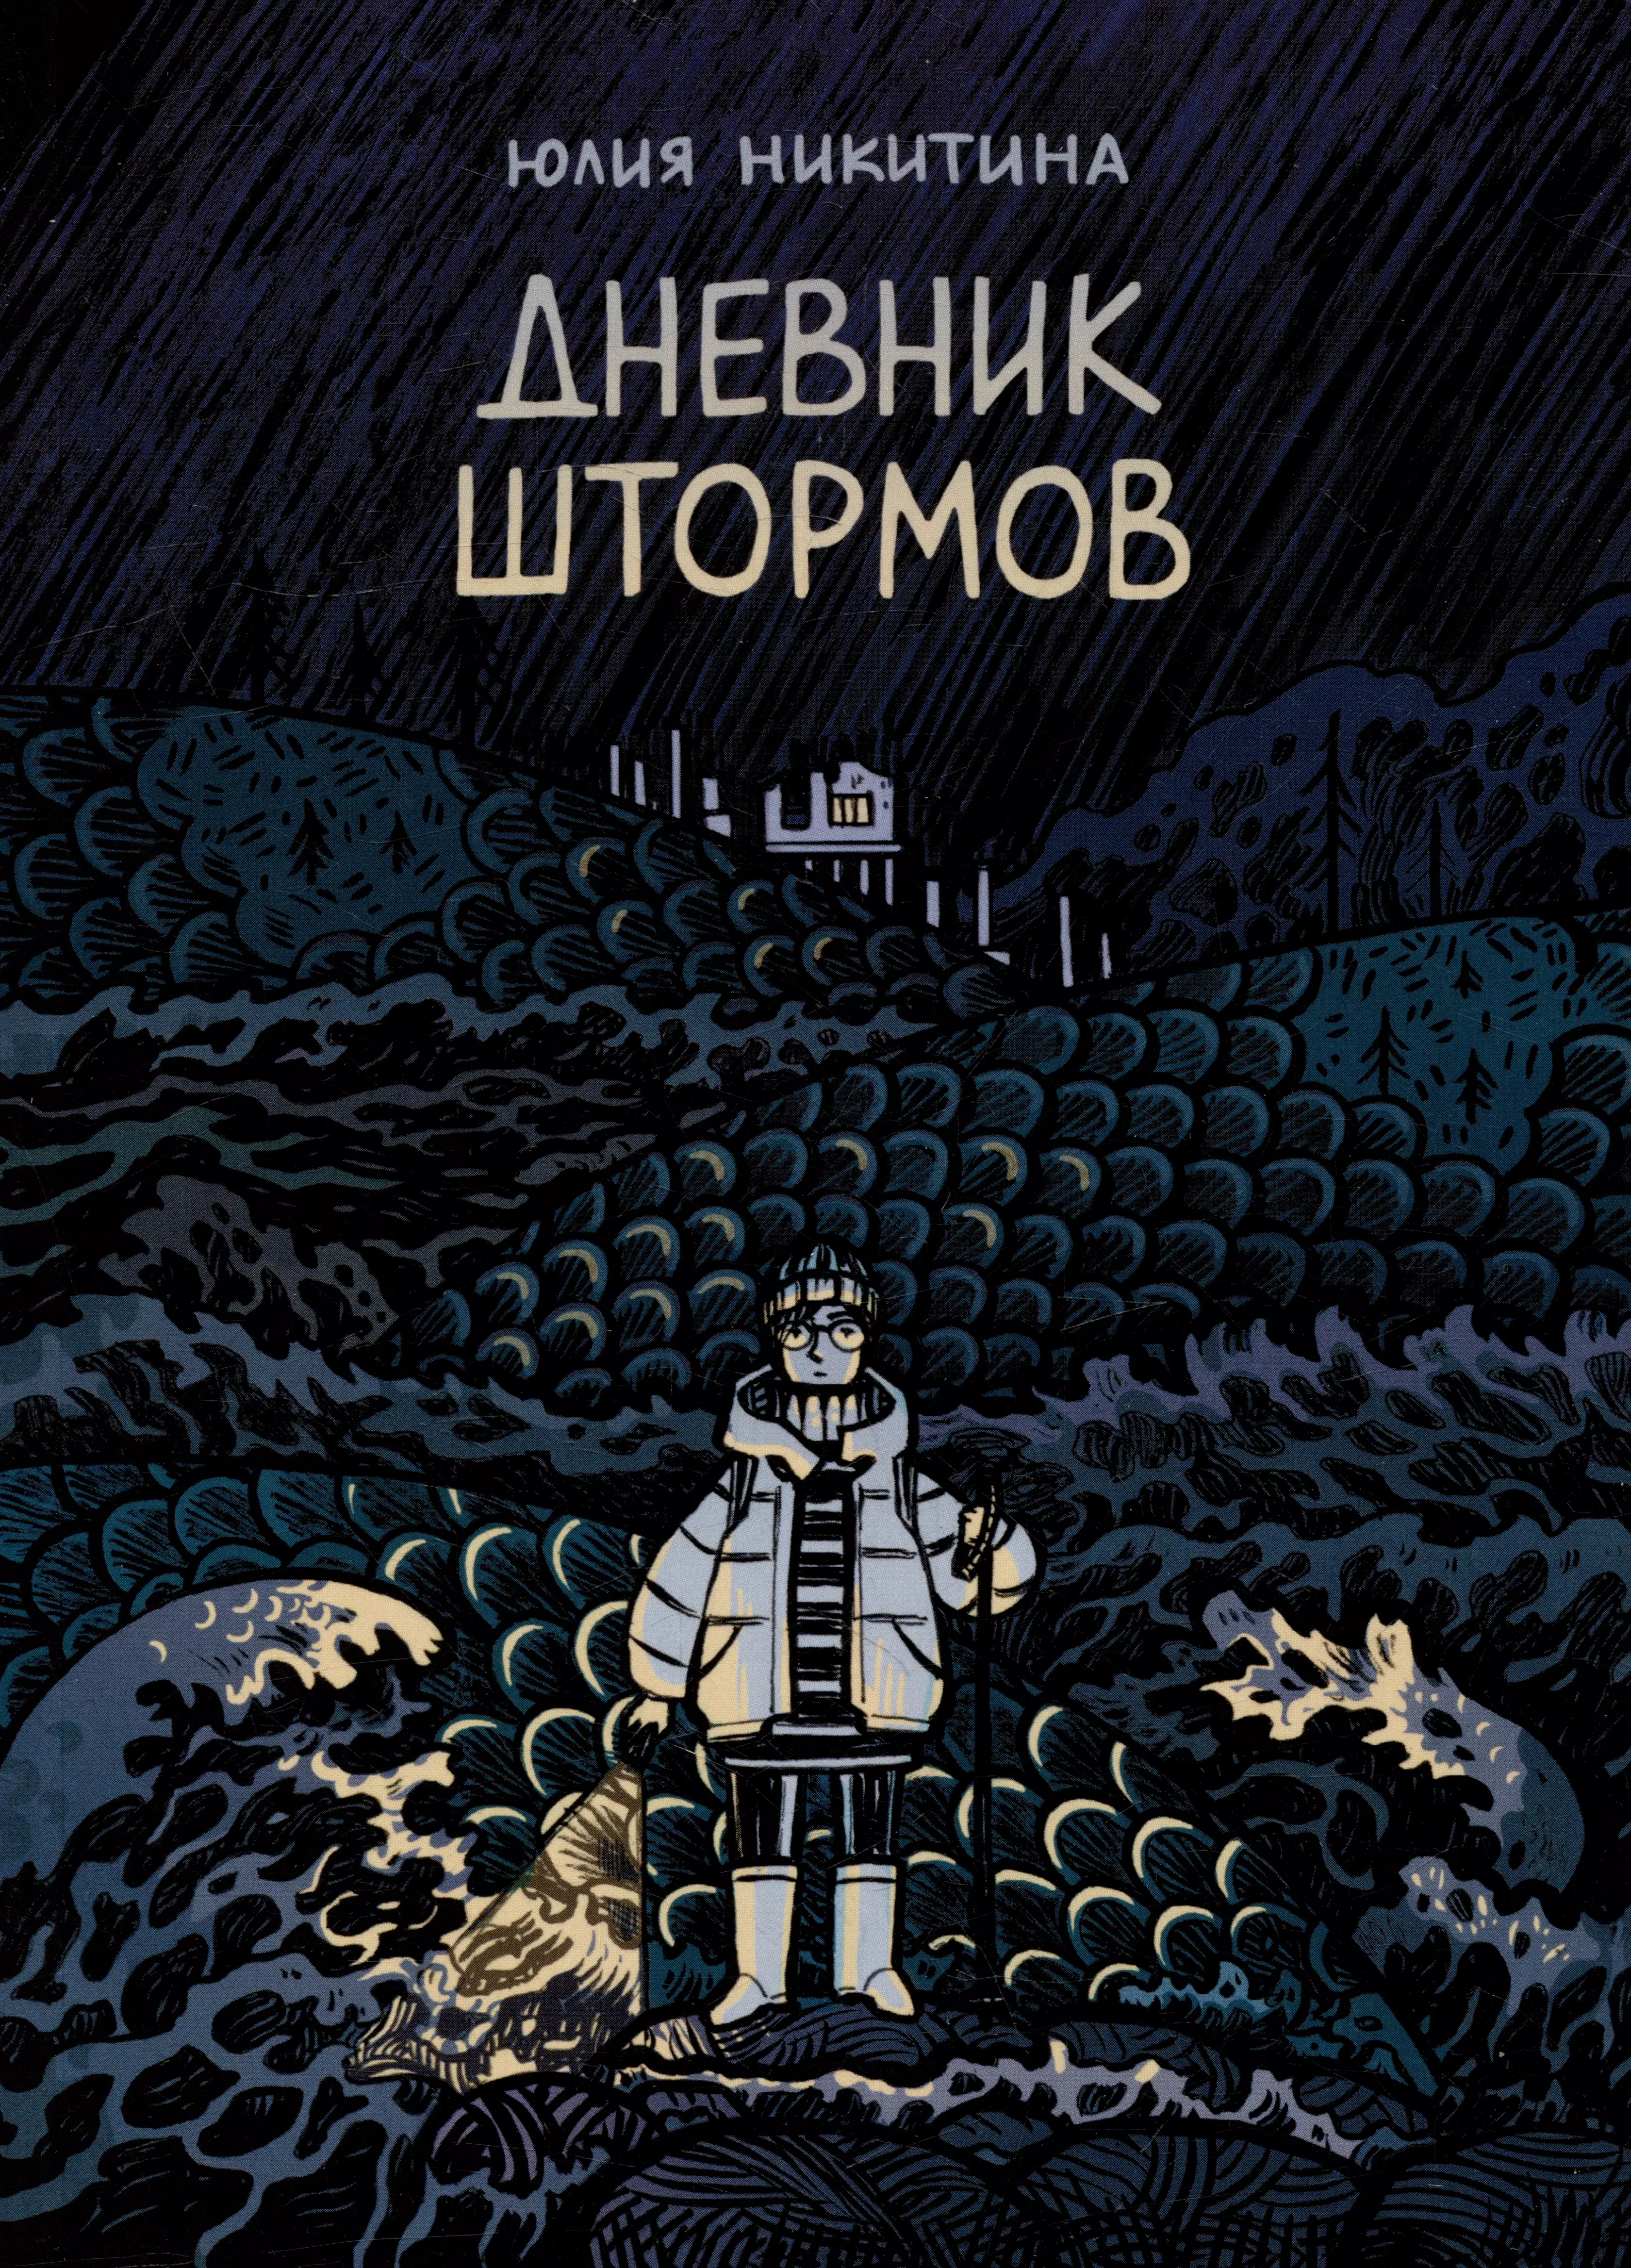 Никитина Юлия Дневник штормов: графический роман